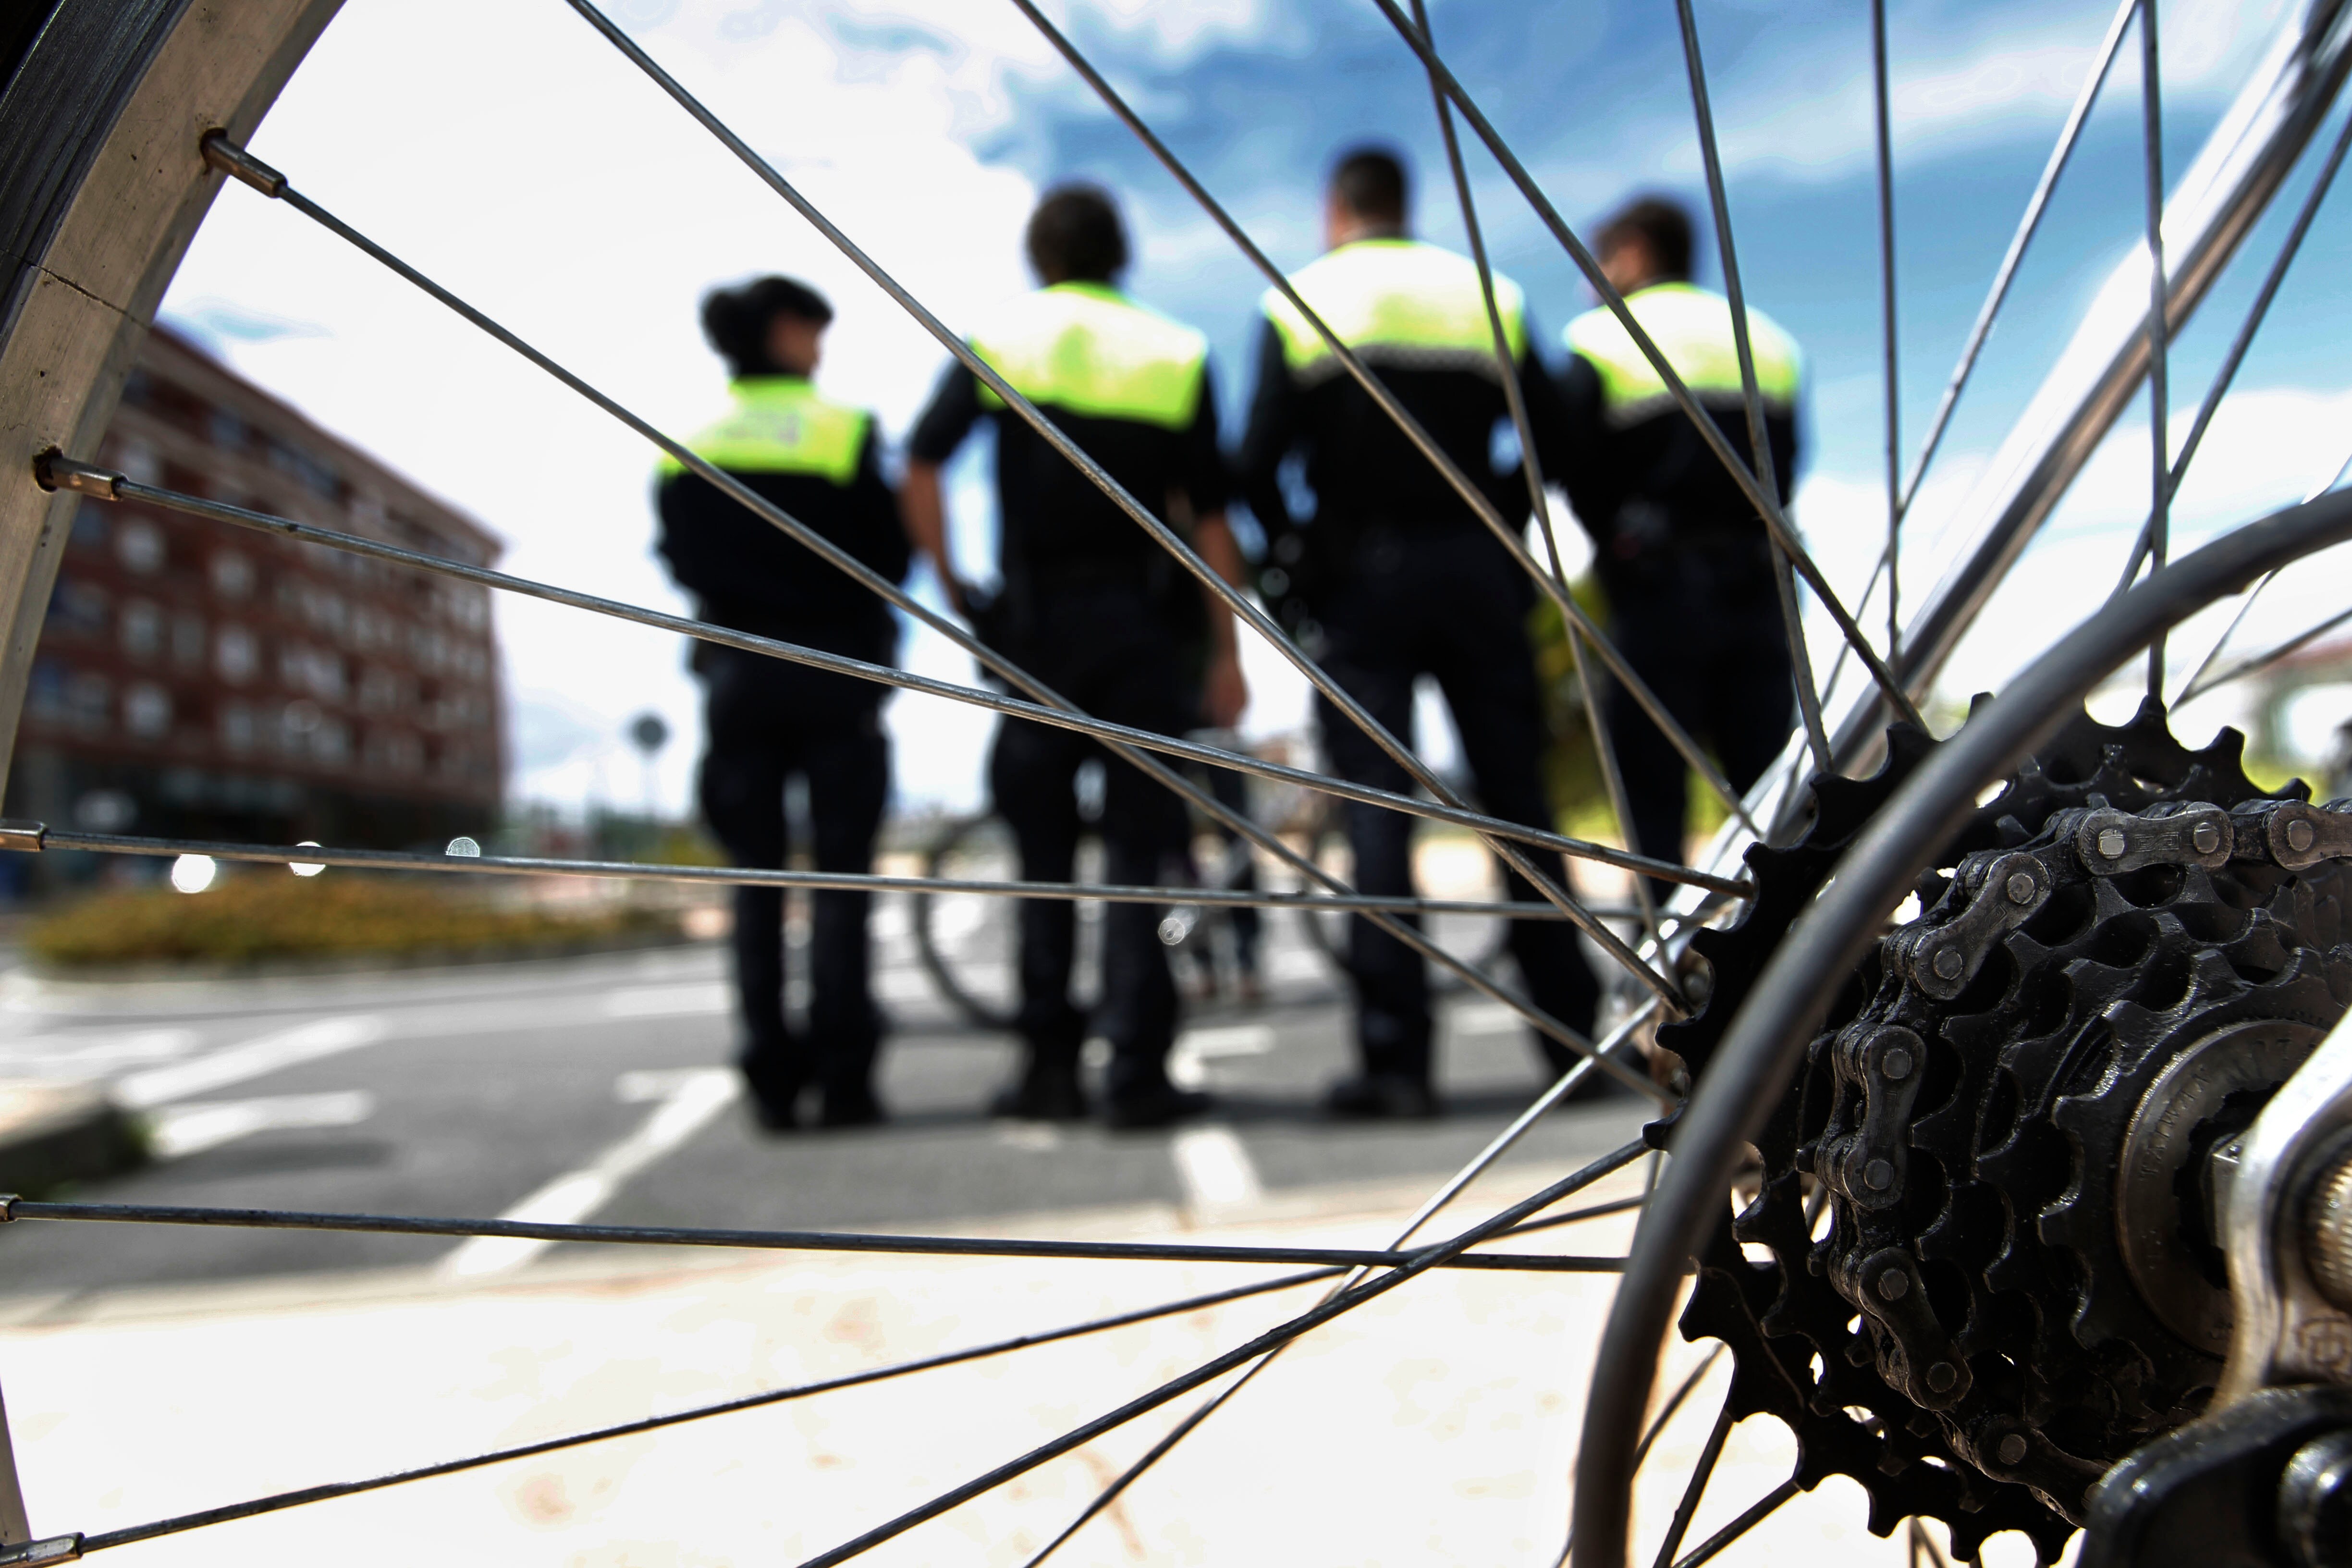 Agentes municipales que patrullarán en bicicleta a partir de unos días, ayer, en el Parque de Tráfico. /JUSTO RODRÍGUEZ